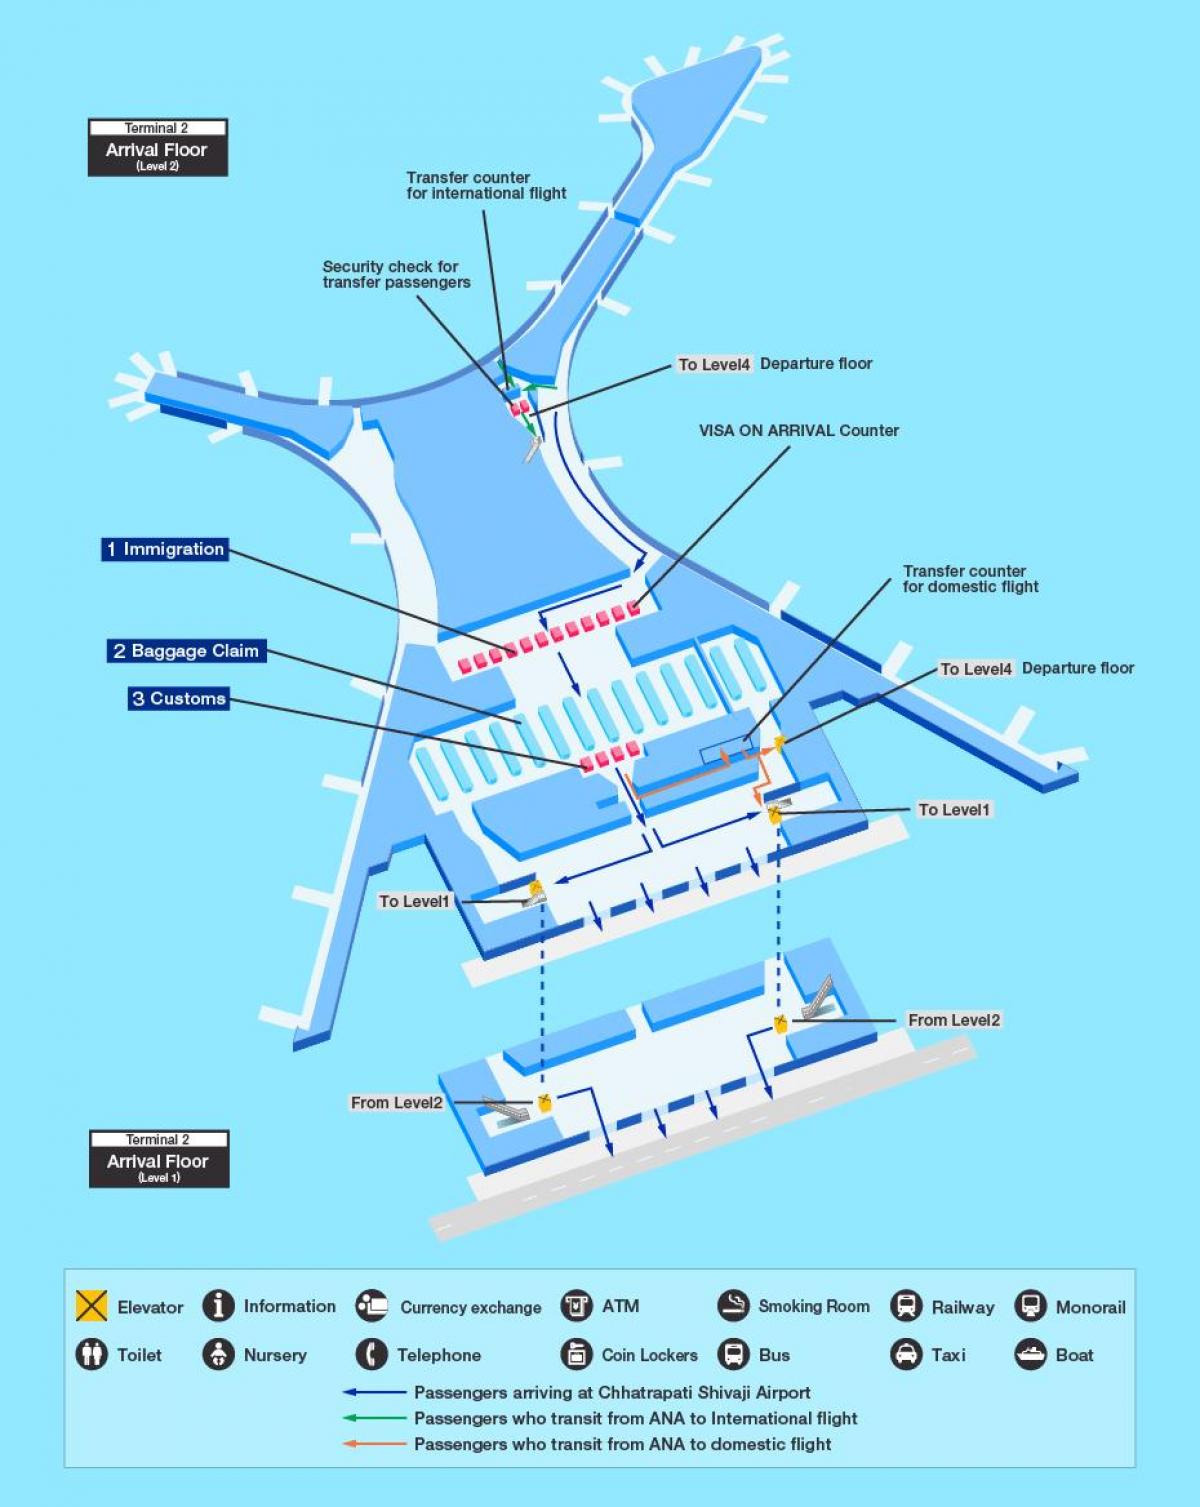 નકશો મુંબઇ ઇન્ટરનેશનલ એરપોર્ટ